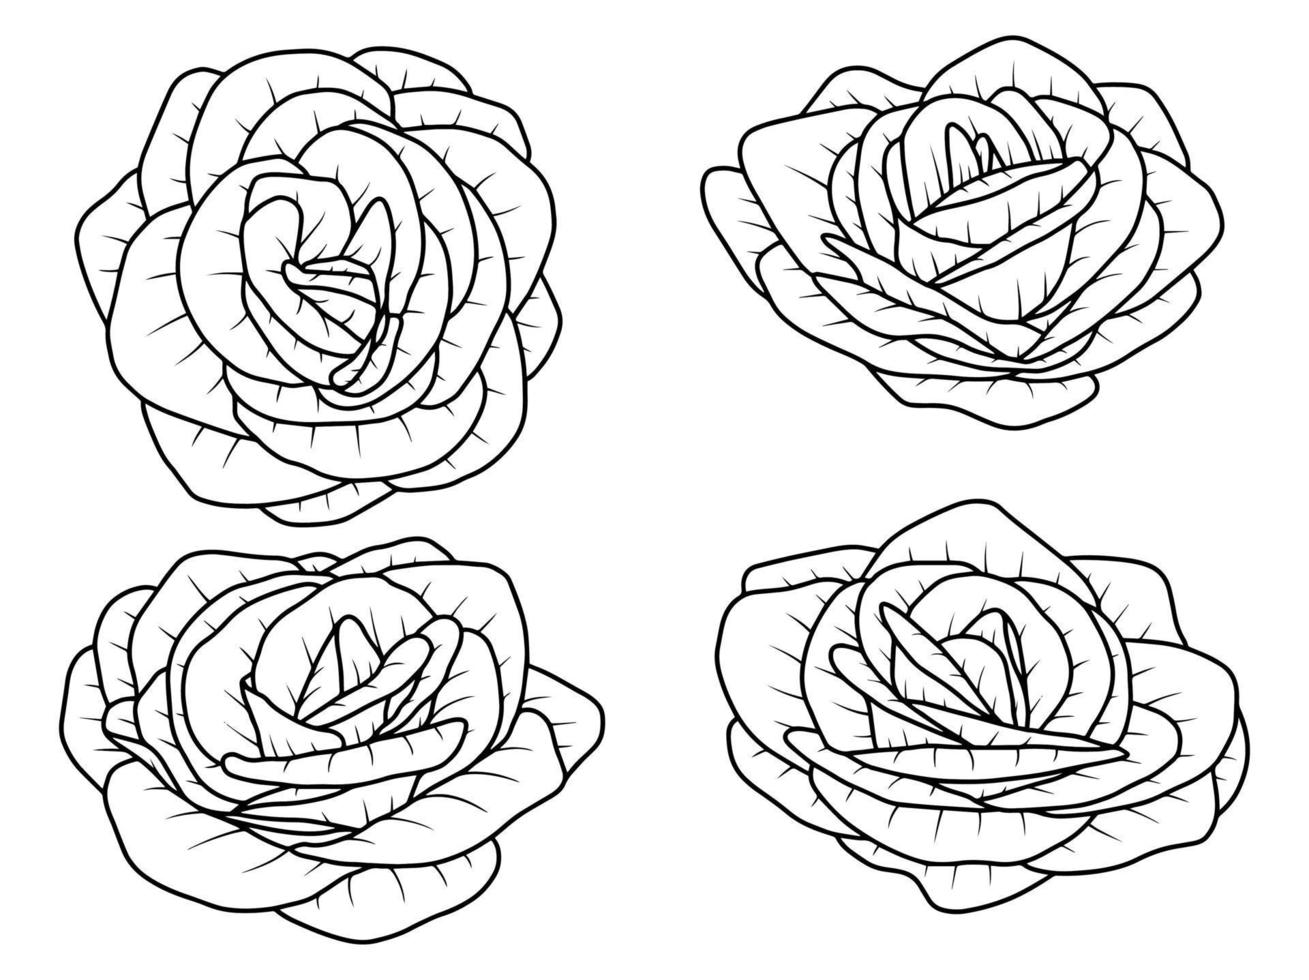 main tiré fleur esquisser ligne art illustration ensemble vecteur